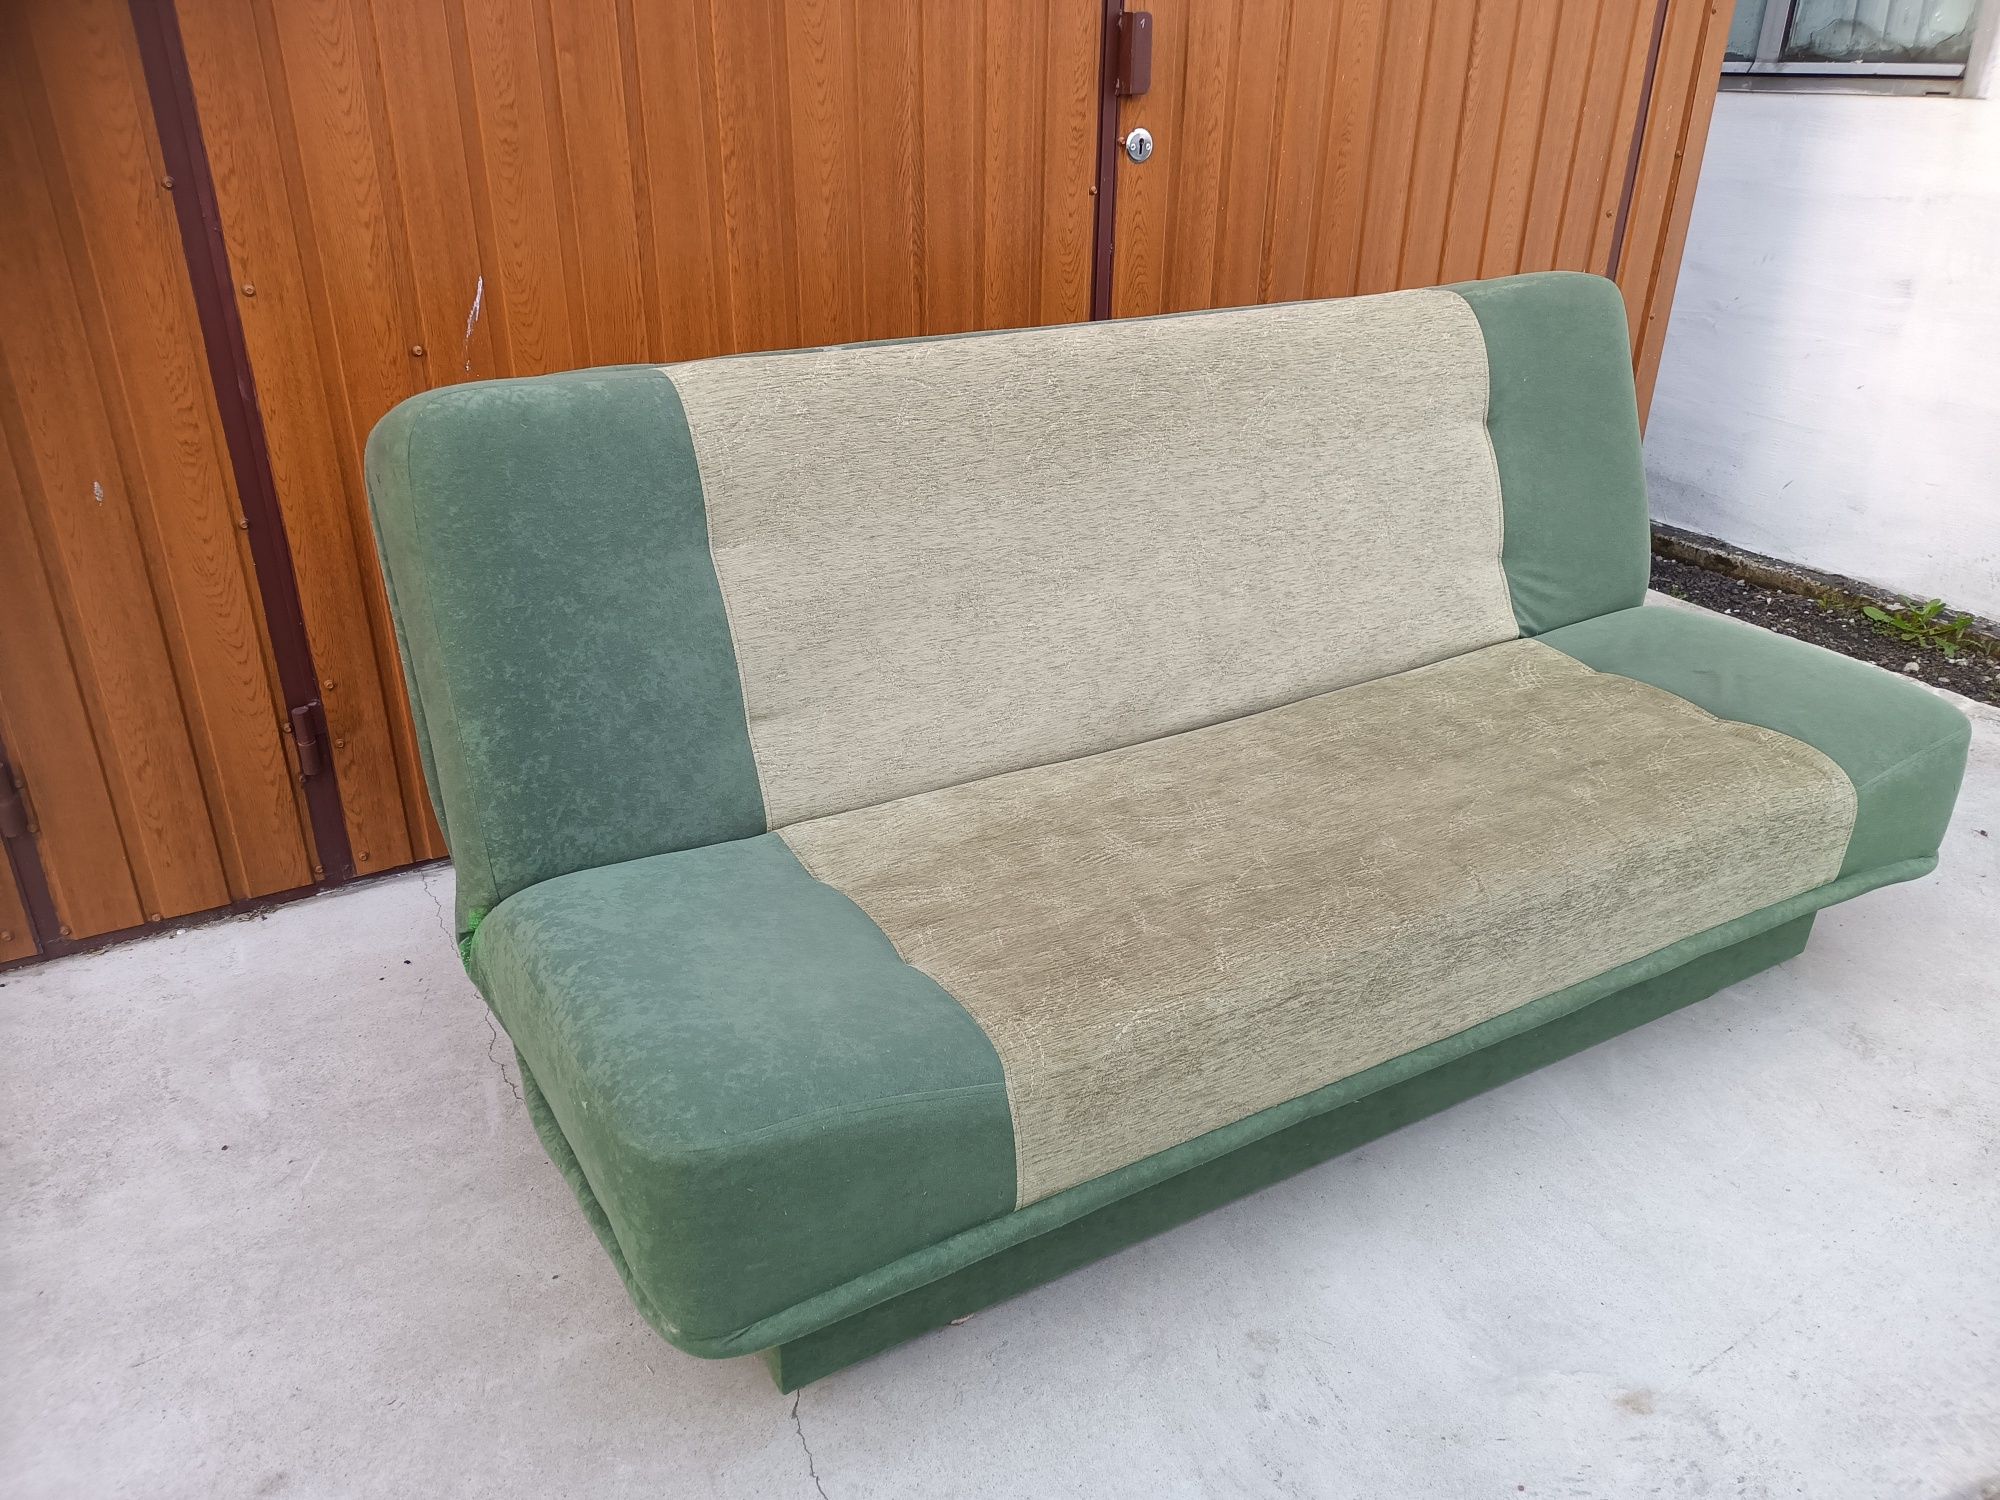 Sz-n dostawa gratis KANAPA wersalka sofa łóżko dwuosobowe fikanka